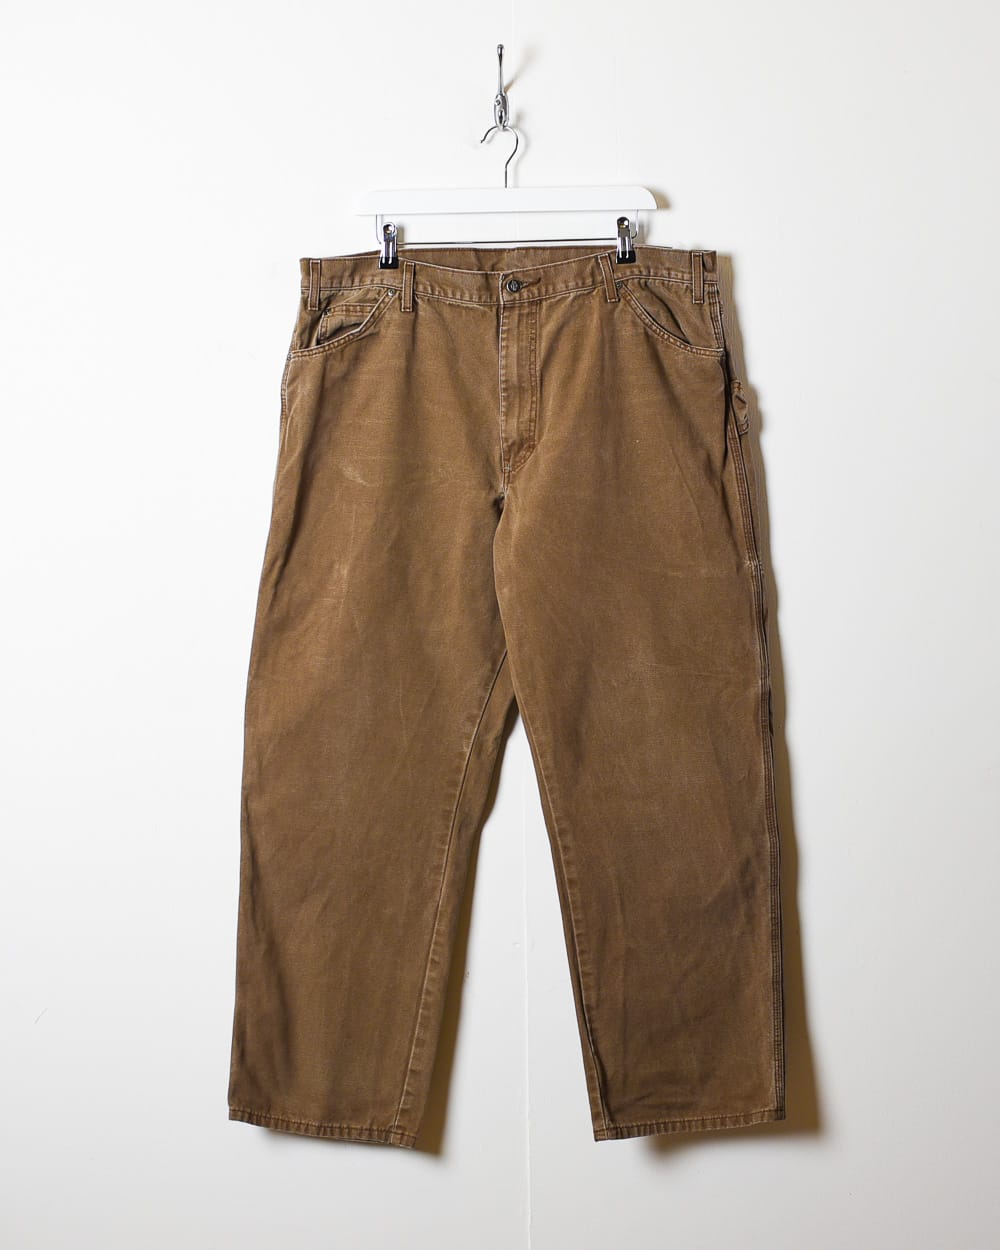 Brown Dickies Carpenter Jeans - W40 L30